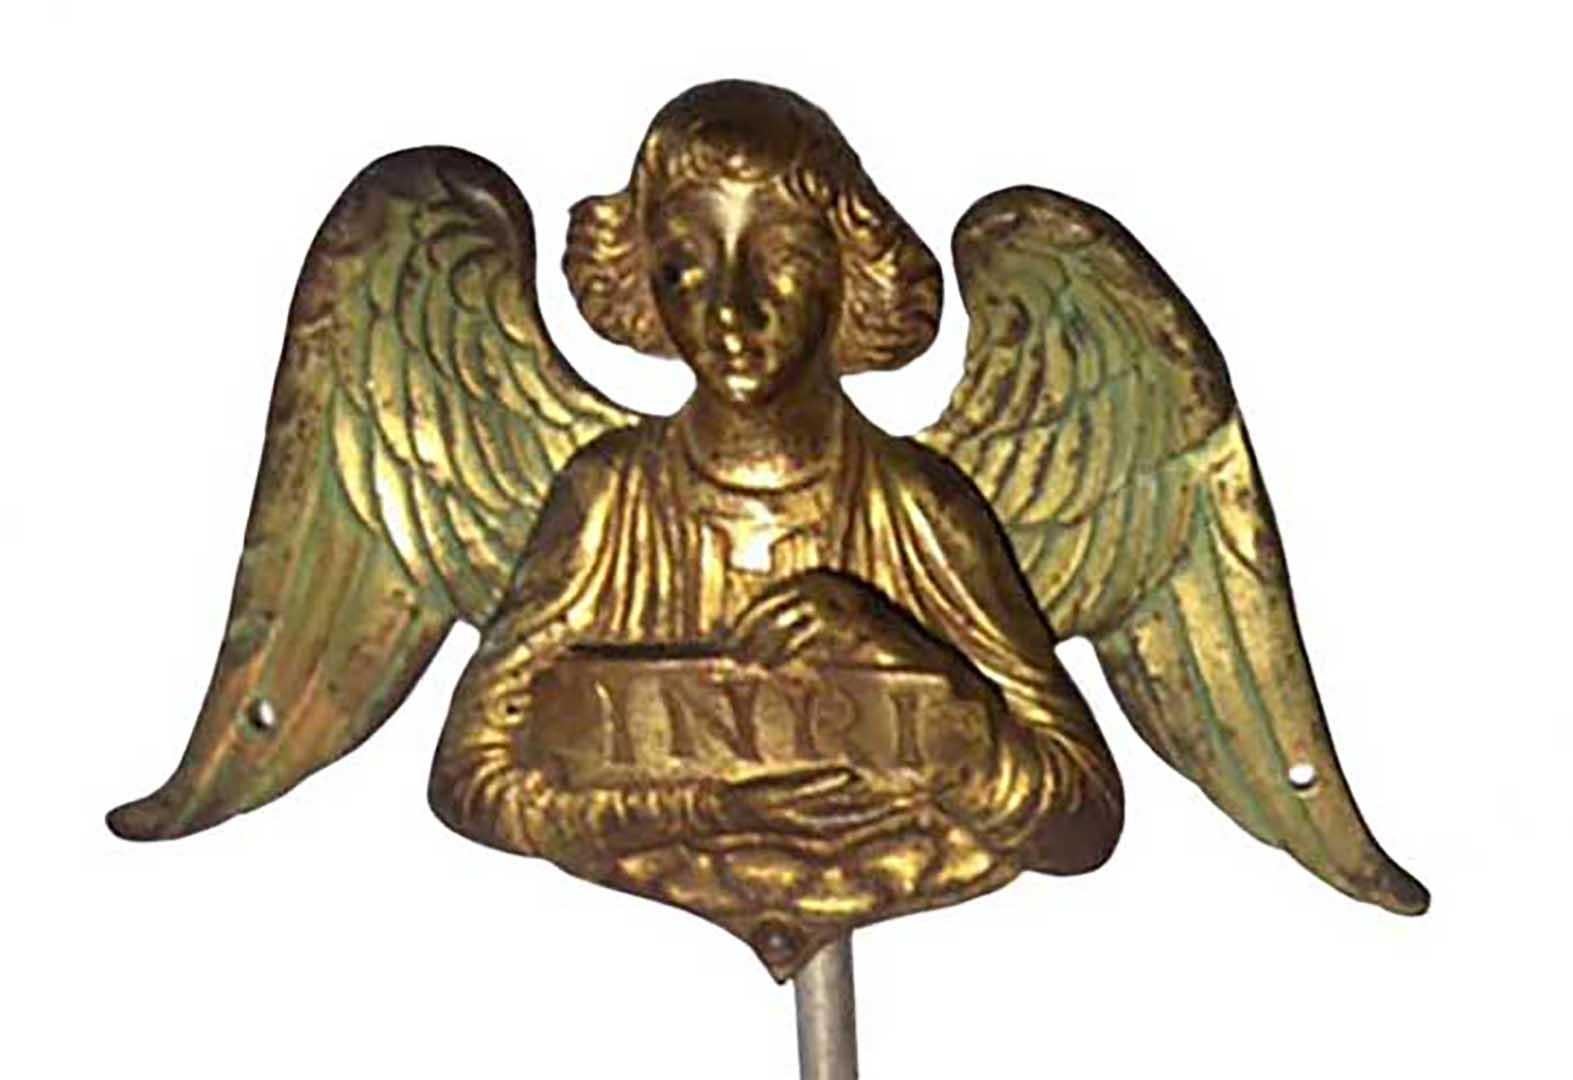 Paire d'anges de style byzantin en bronze doré avec couleur verte originale sur le bronze sur les ailes. Montés sur des supports en lucite.